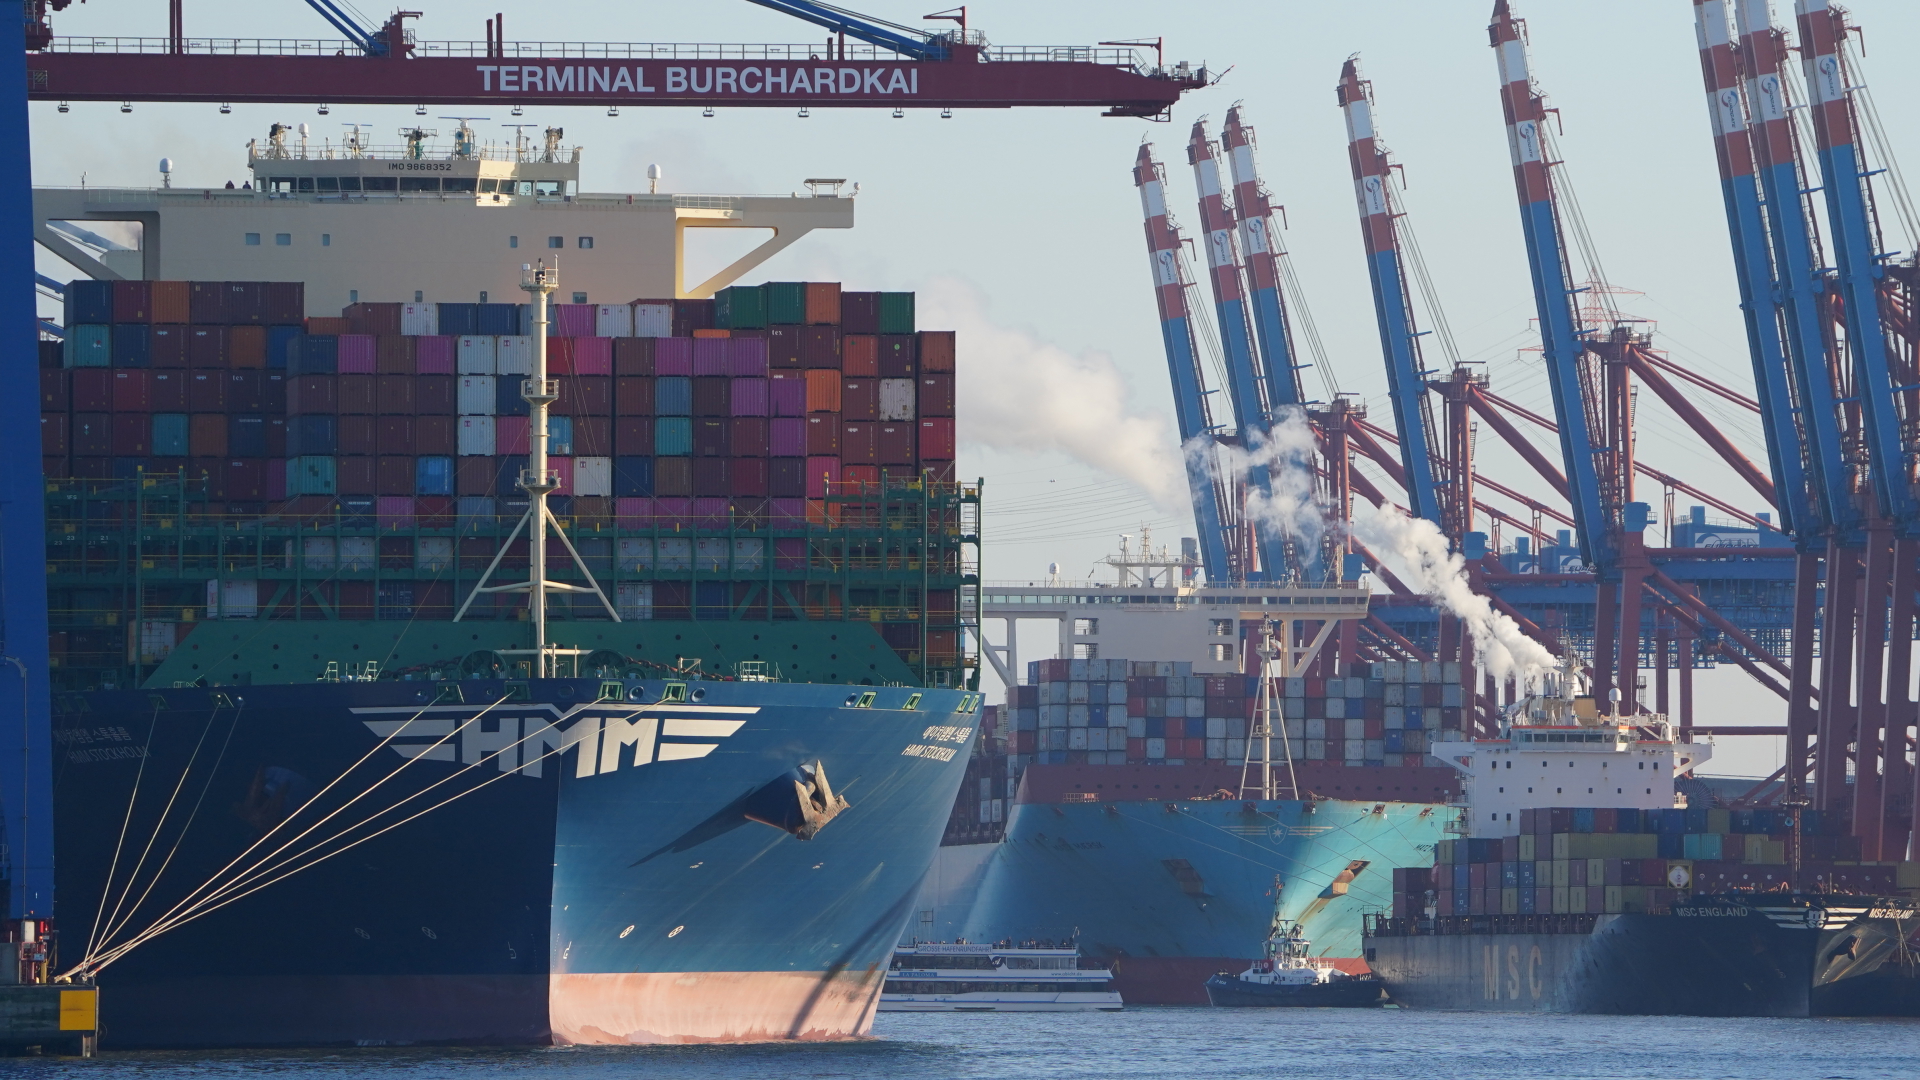 Containerschiffe werden am Burchardkai (links) und am Eurogate Container Terminal (hinten rechts) im Hamburger Hafen be- und entladen. | dpa